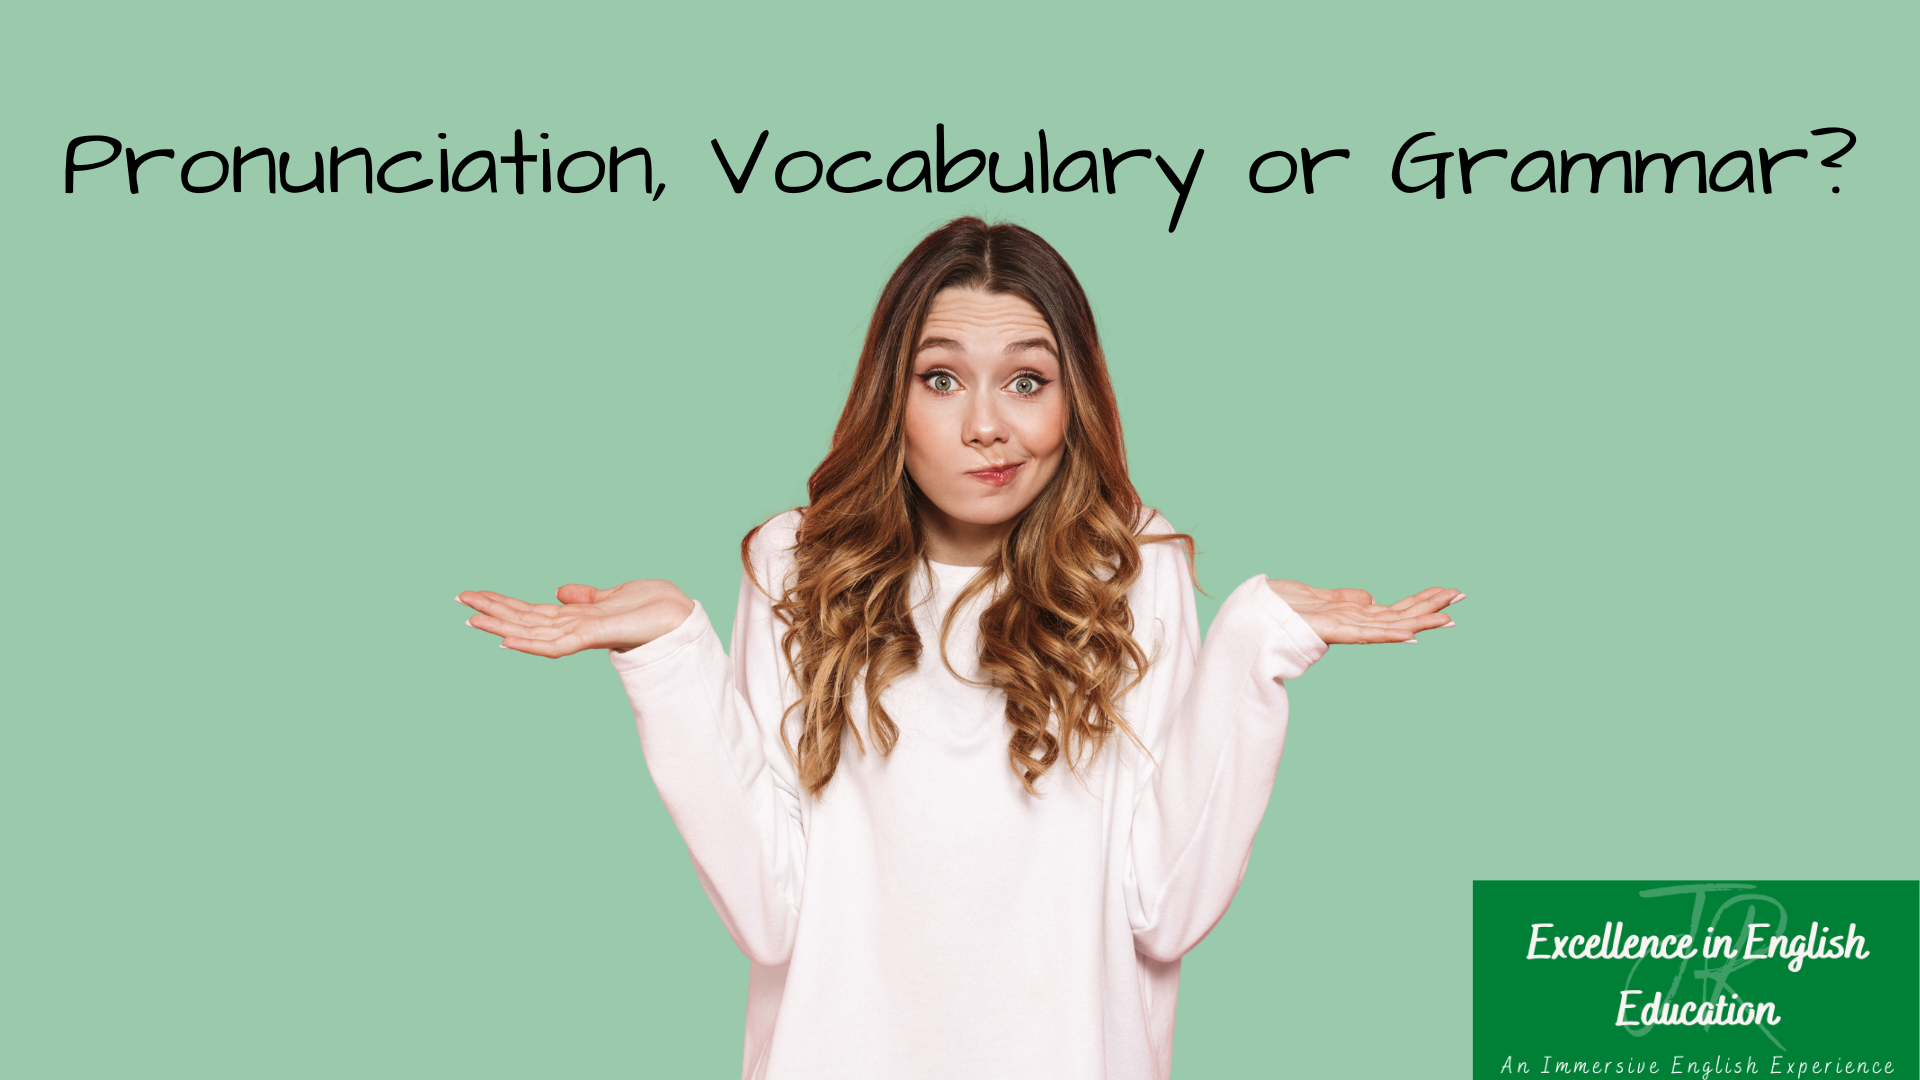 Should I improve my grammar, vocabulary or pronunciation?